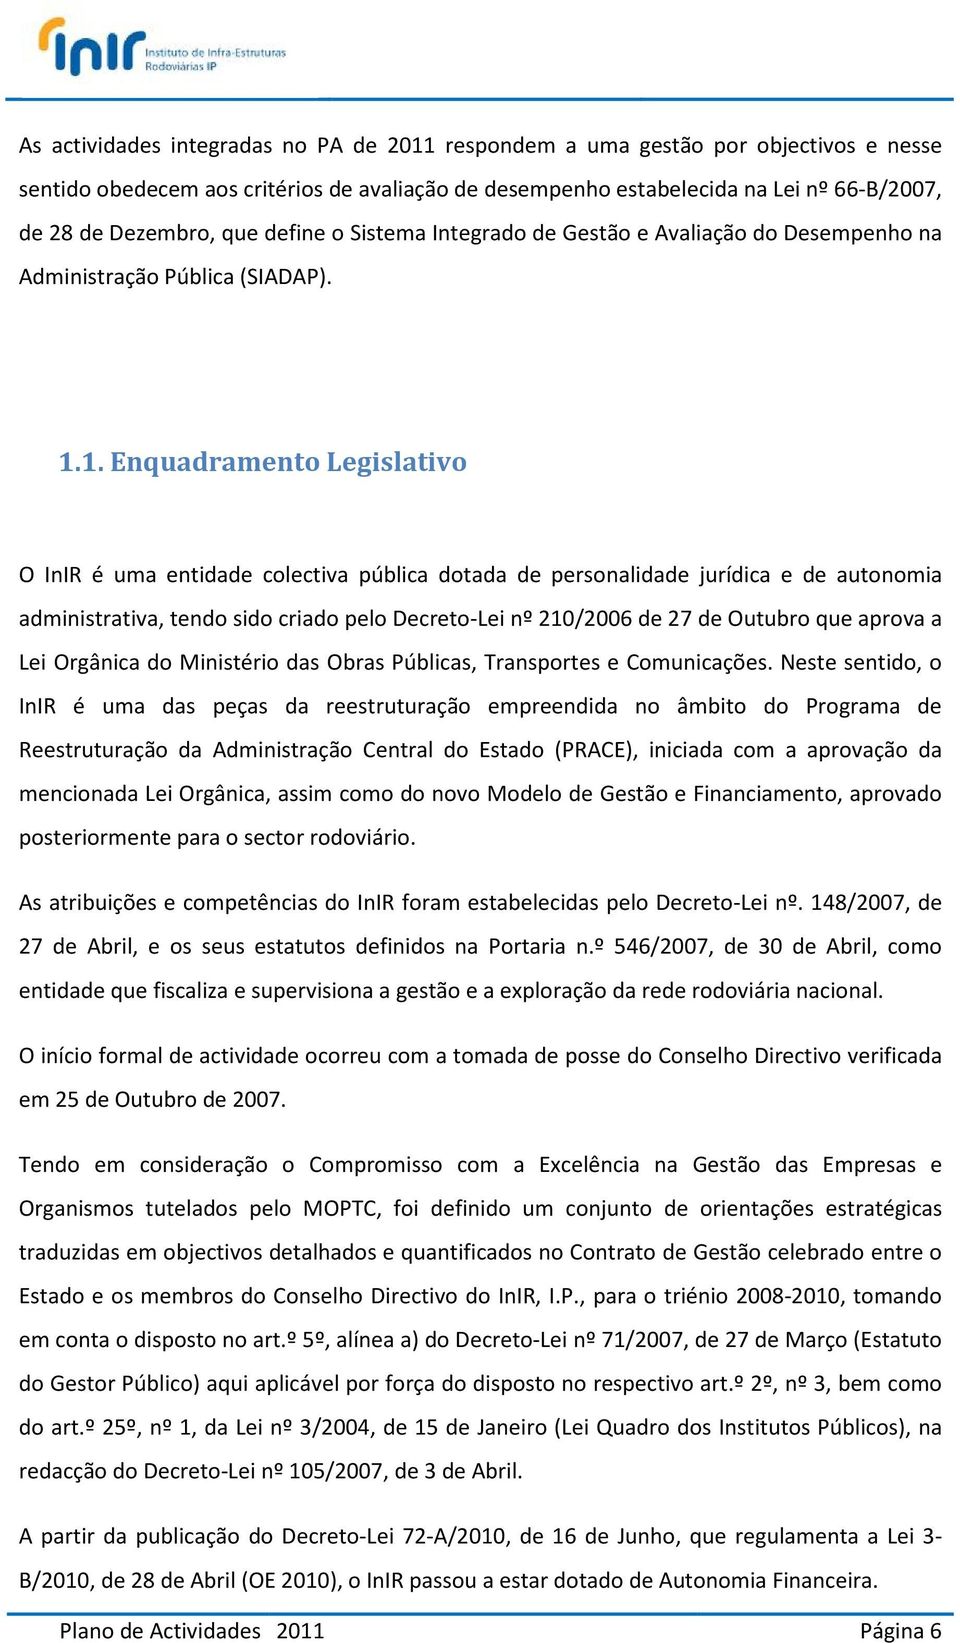 1. Enquadramento Legislativo O InIR é uma entidade colectiva pública dotada de personalidade jurídica e de autonomia administrativa, tendo sido criado pelo Decreto-Lei nº 210/2006 de 27 de Outubro